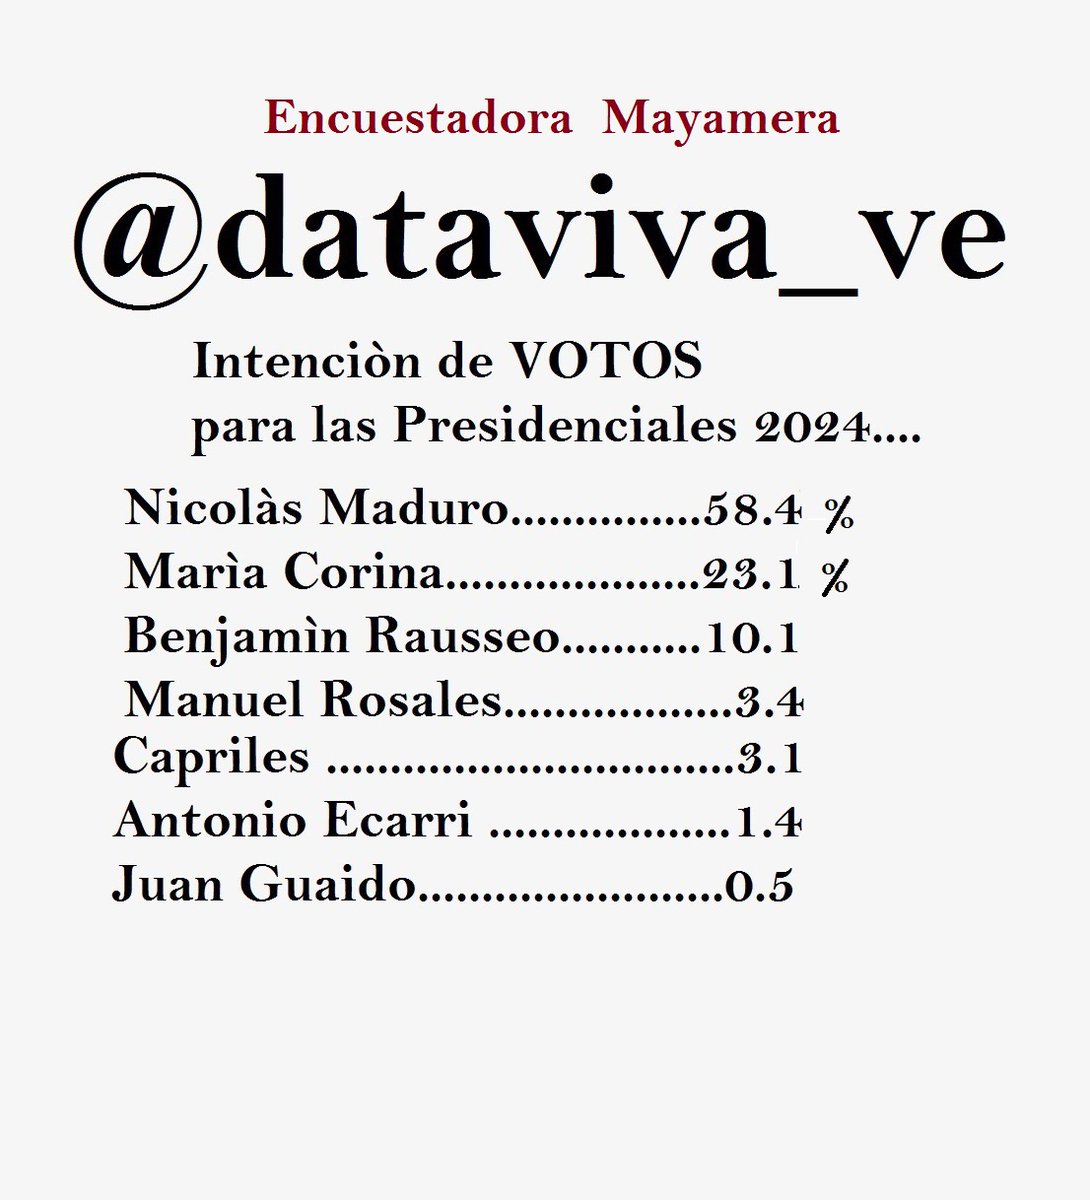 .@_RoqueCastro @alirio1504 @ejdecena @Josefin63133955 ..SEGÙN...@Dataviva_ve....@Datavivaven ---Las Elecciones Presidenciales 2024 Nicolàs Maduro Ganarà con el 58.4 por ciento!!!!!!